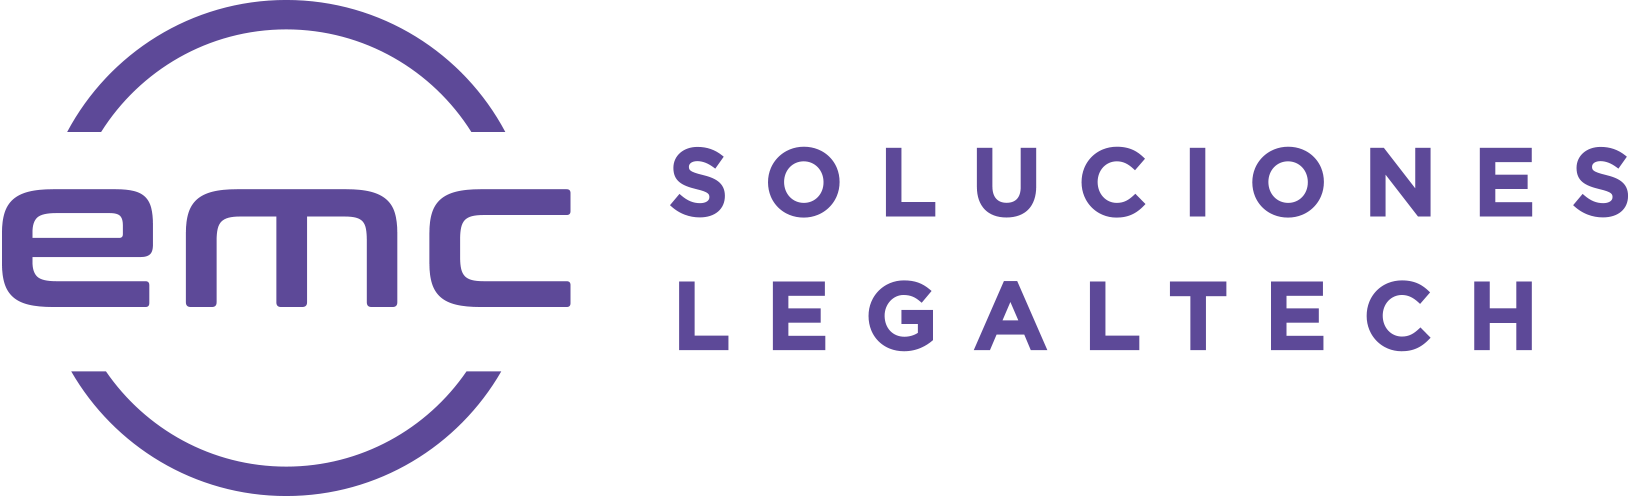 Emc Software Jurídico Soluciones Legaltech